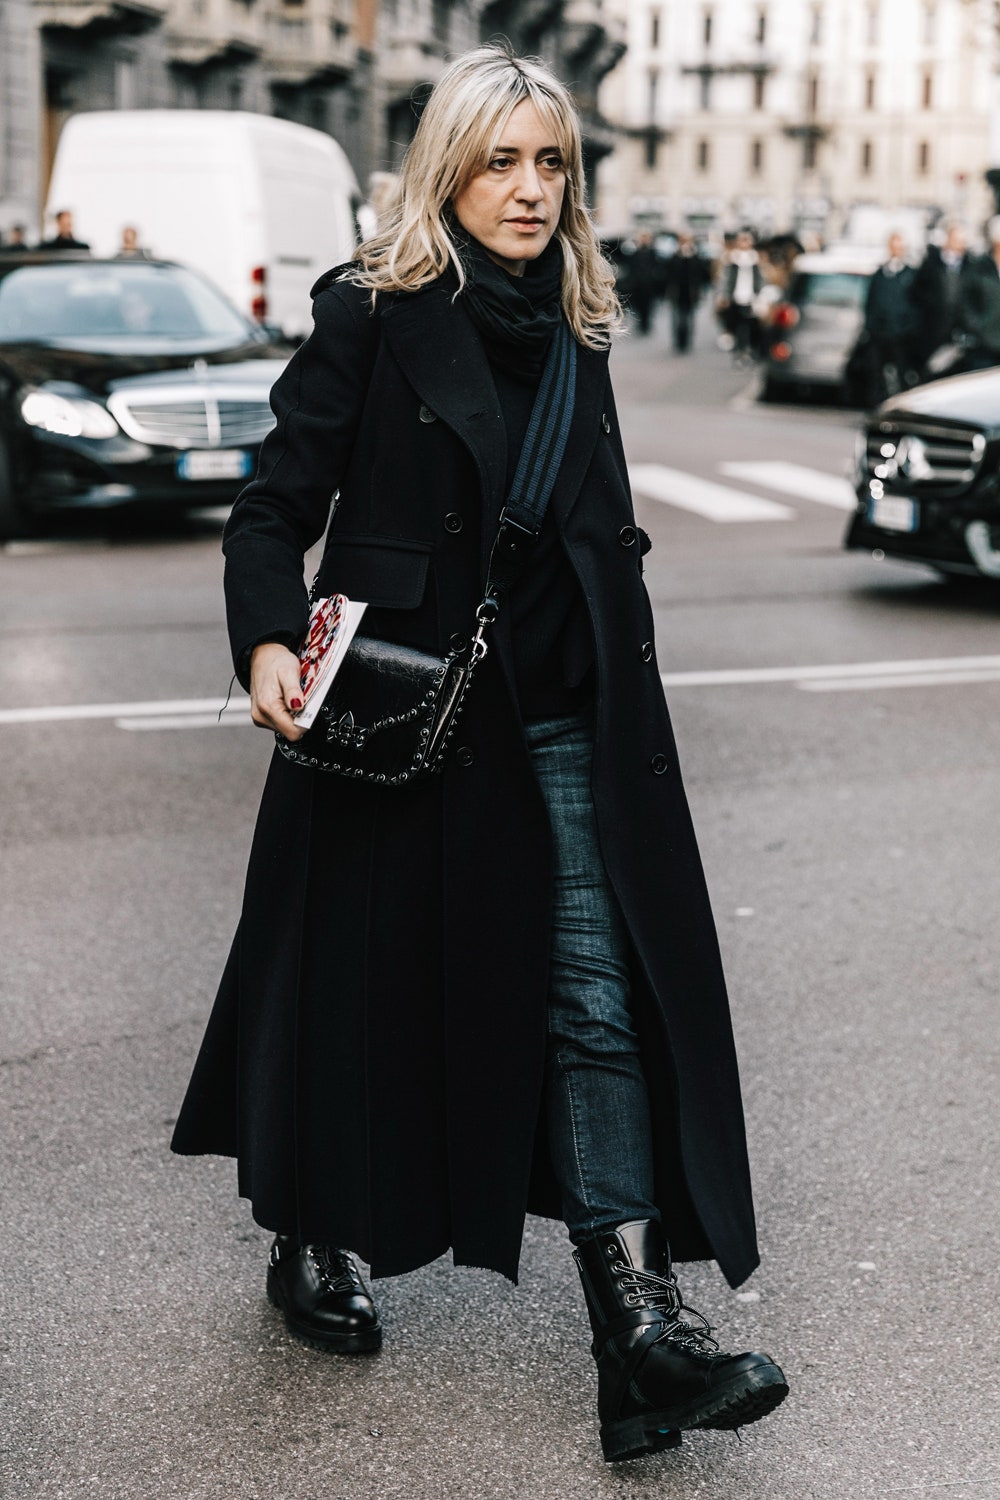 С чем носить классическое женское пальто, чтобы выглядеть модно и стильно?